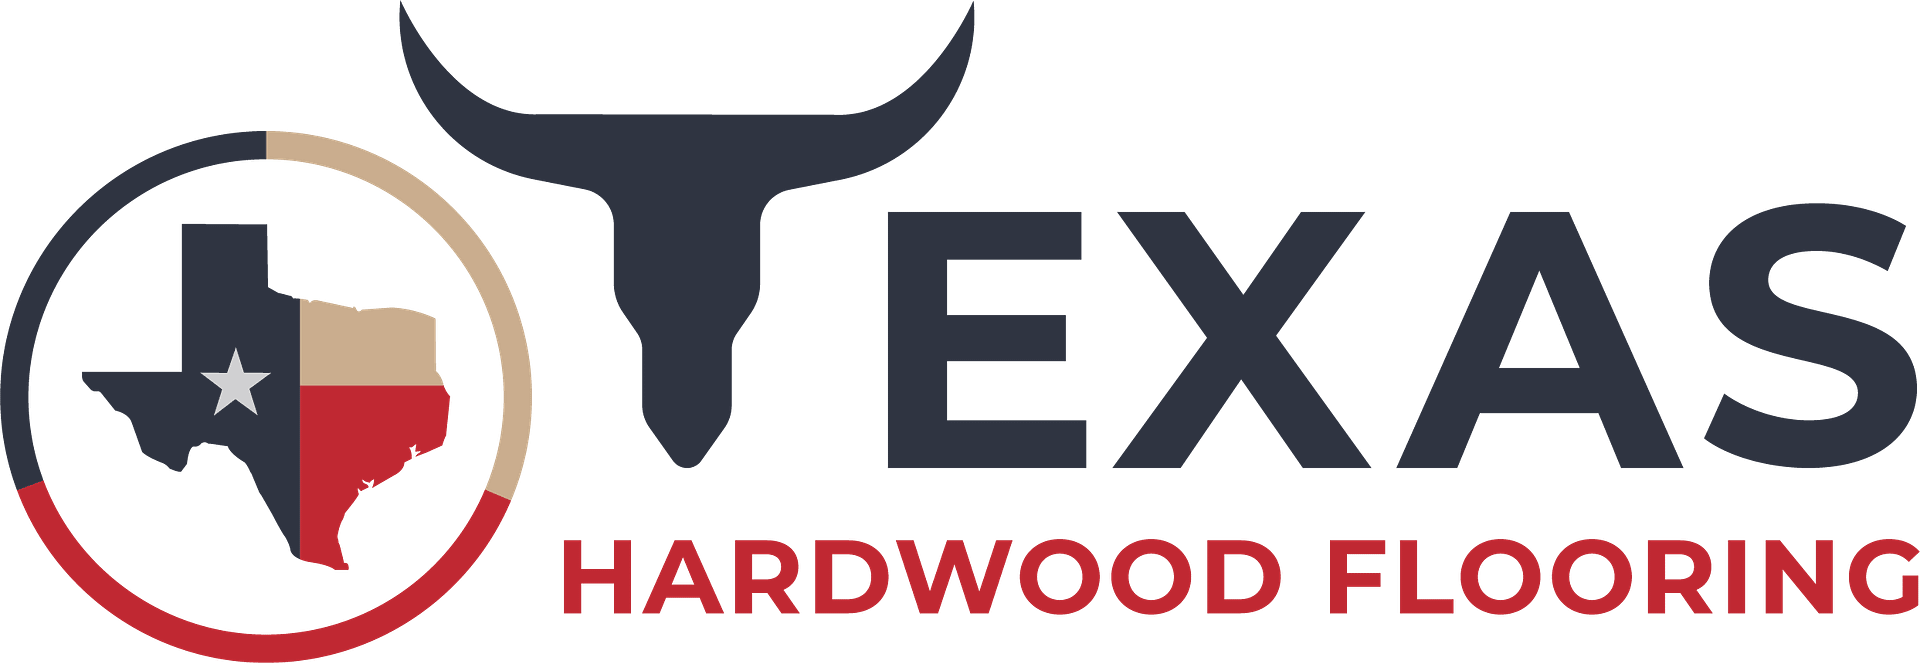 texas-hardwood-flooring-logo